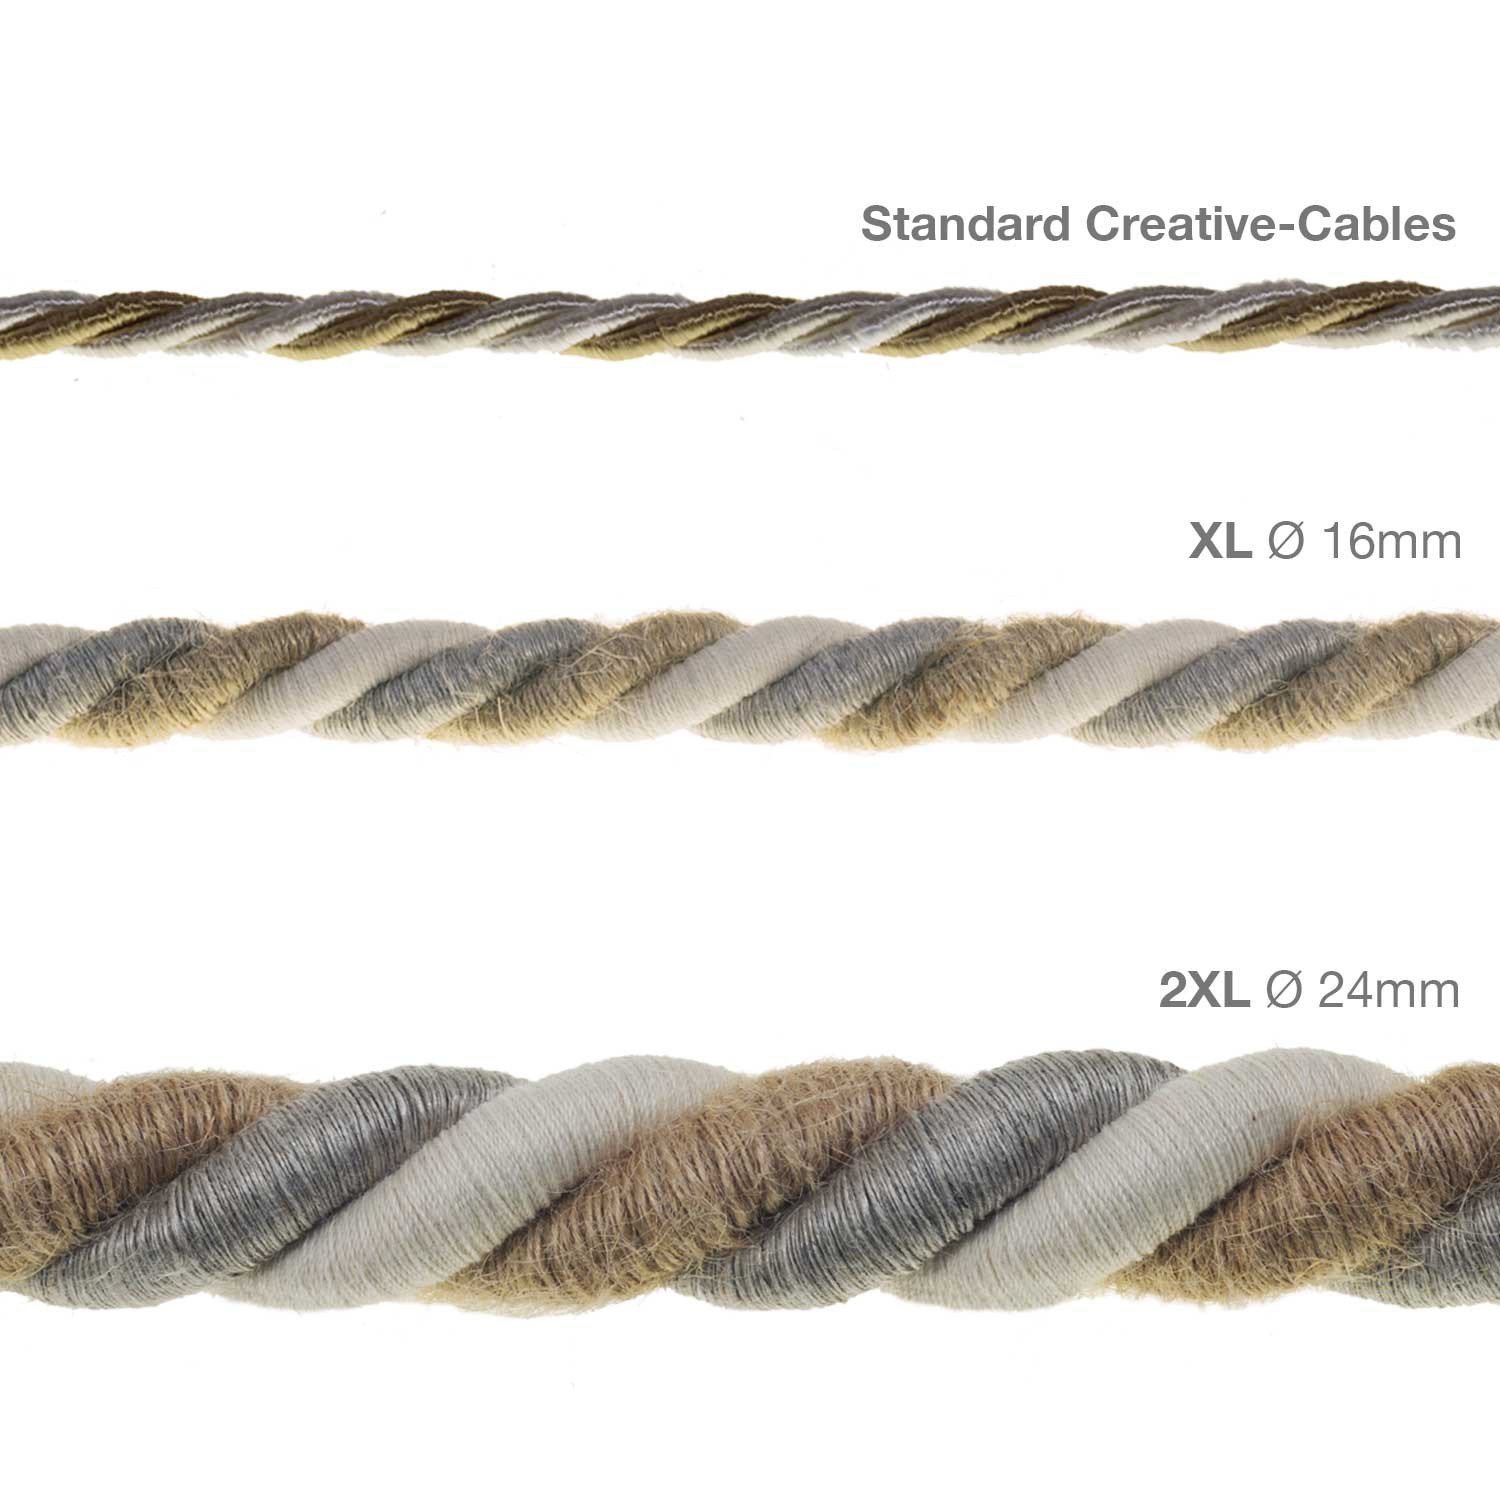 Cordon XL, cable eléctrico 3x0,75. Revestimiento de yute, algodón y lino Country. Diámetro: 16mm.